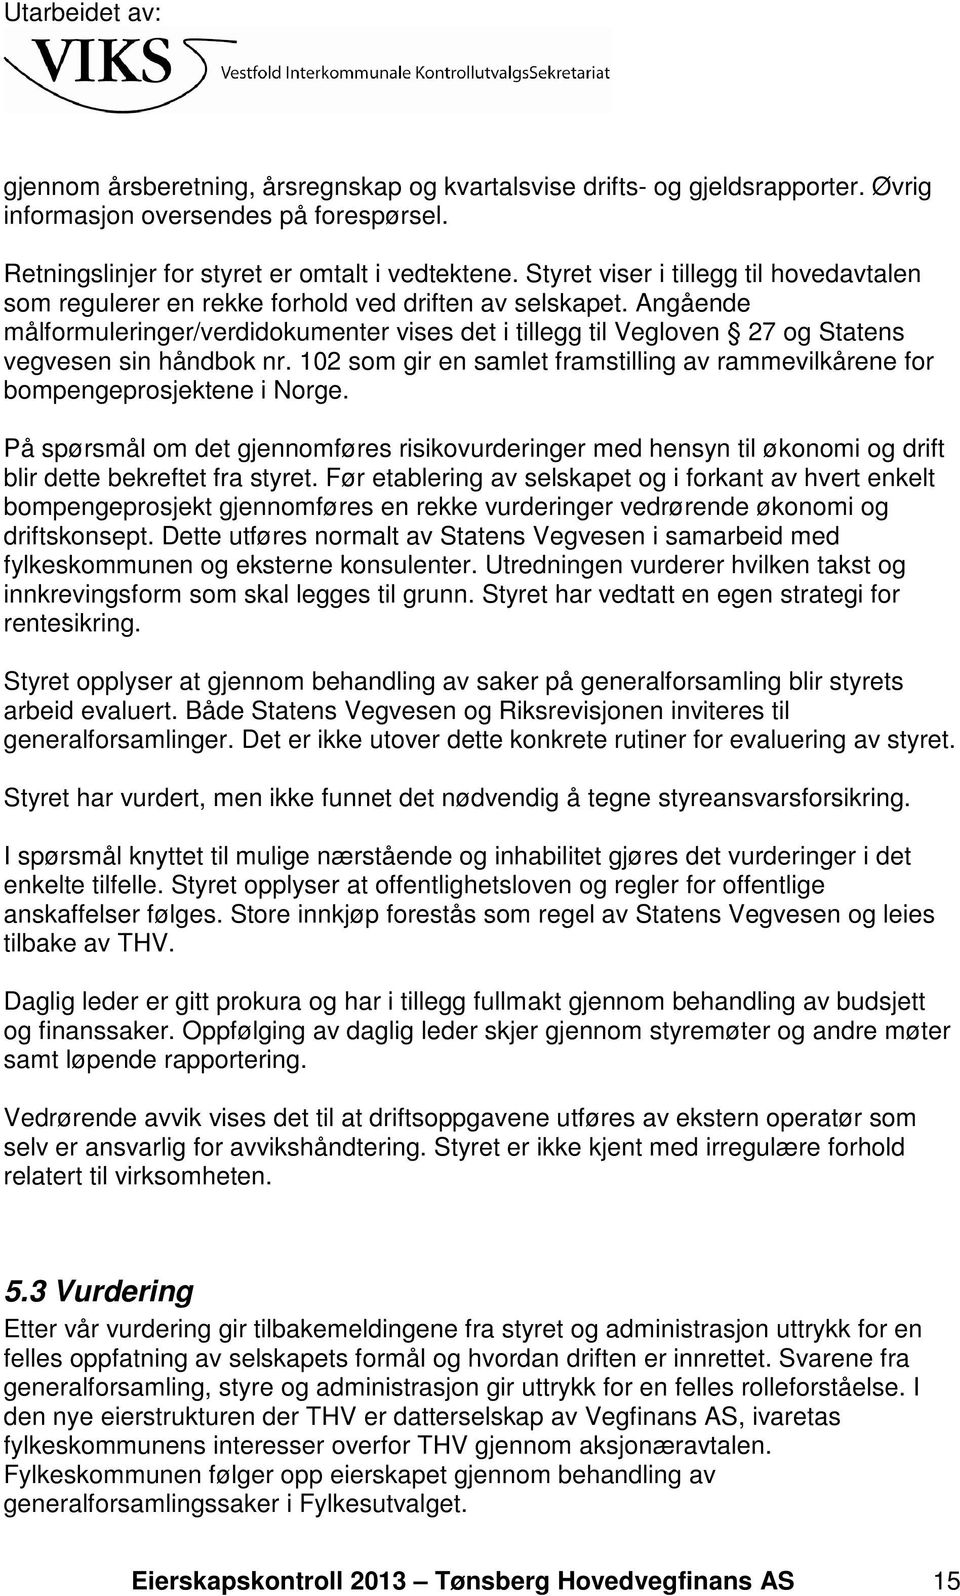 Angående målformuleringer/verdidokumenter vises det i tillegg til Vegloven 27 og Statens vegvesen sin håndbok nr. 102 som gir en samlet framstilling av rammevilkårene for bompengeprosjektene i Norge.